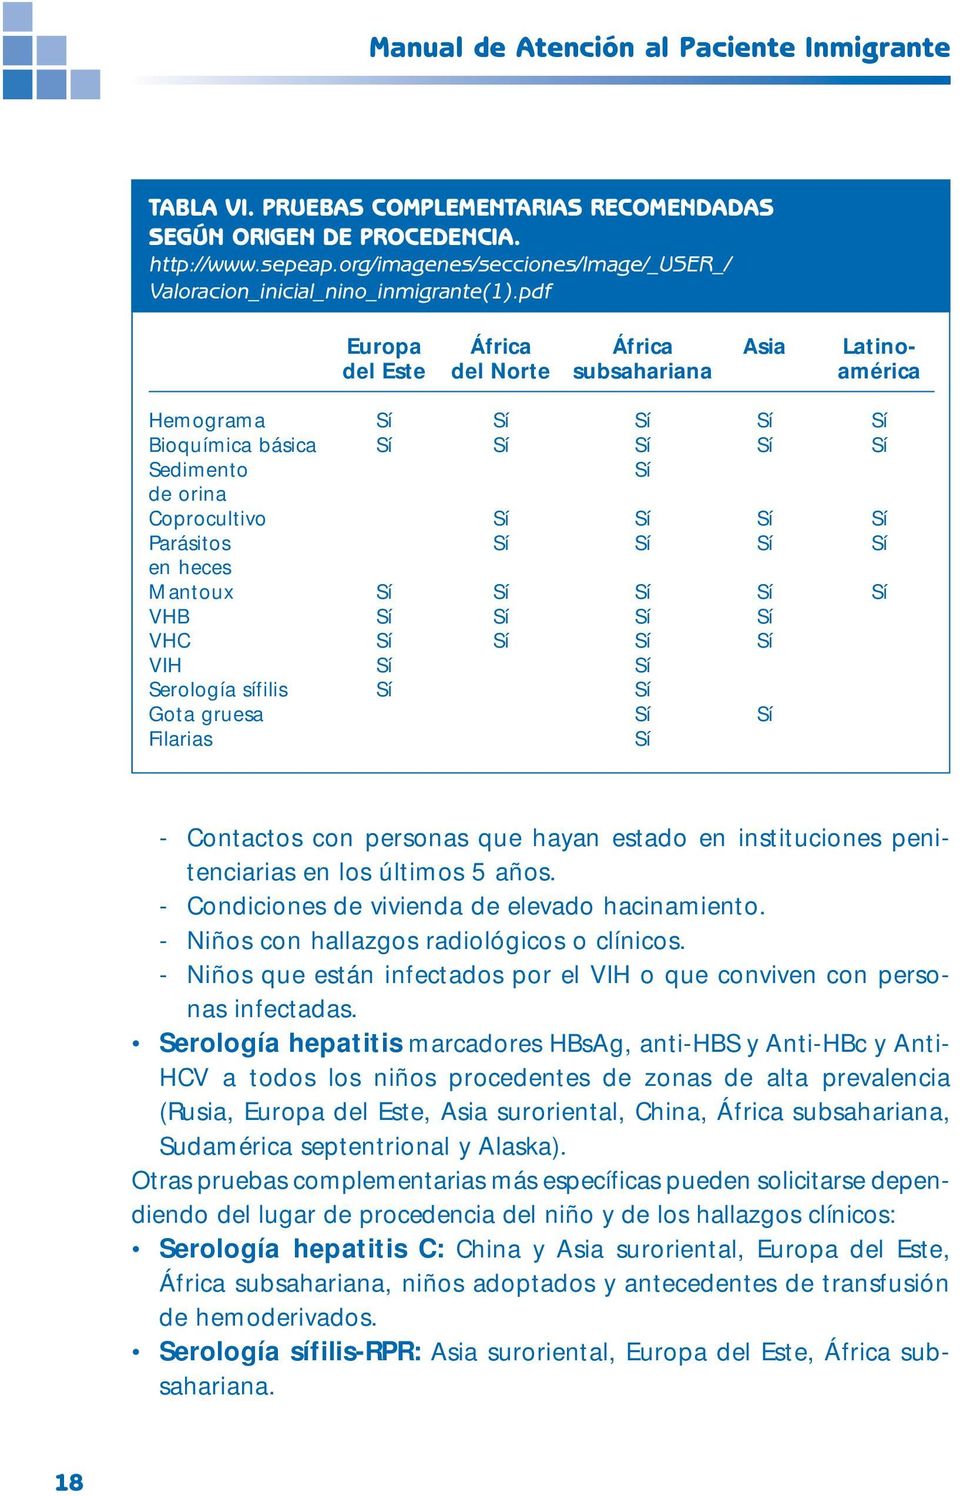 pdf Europa África África Asia Latinodel Este del Norte subsahariana américa Hemograma Sí Sí Sí Sí Sí Bioquímica básica Sí Sí Sí Sí Sí Sedimento Sí de orina Coprocultivo Sí Sí Sí Sí Parásitos Sí Sí Sí